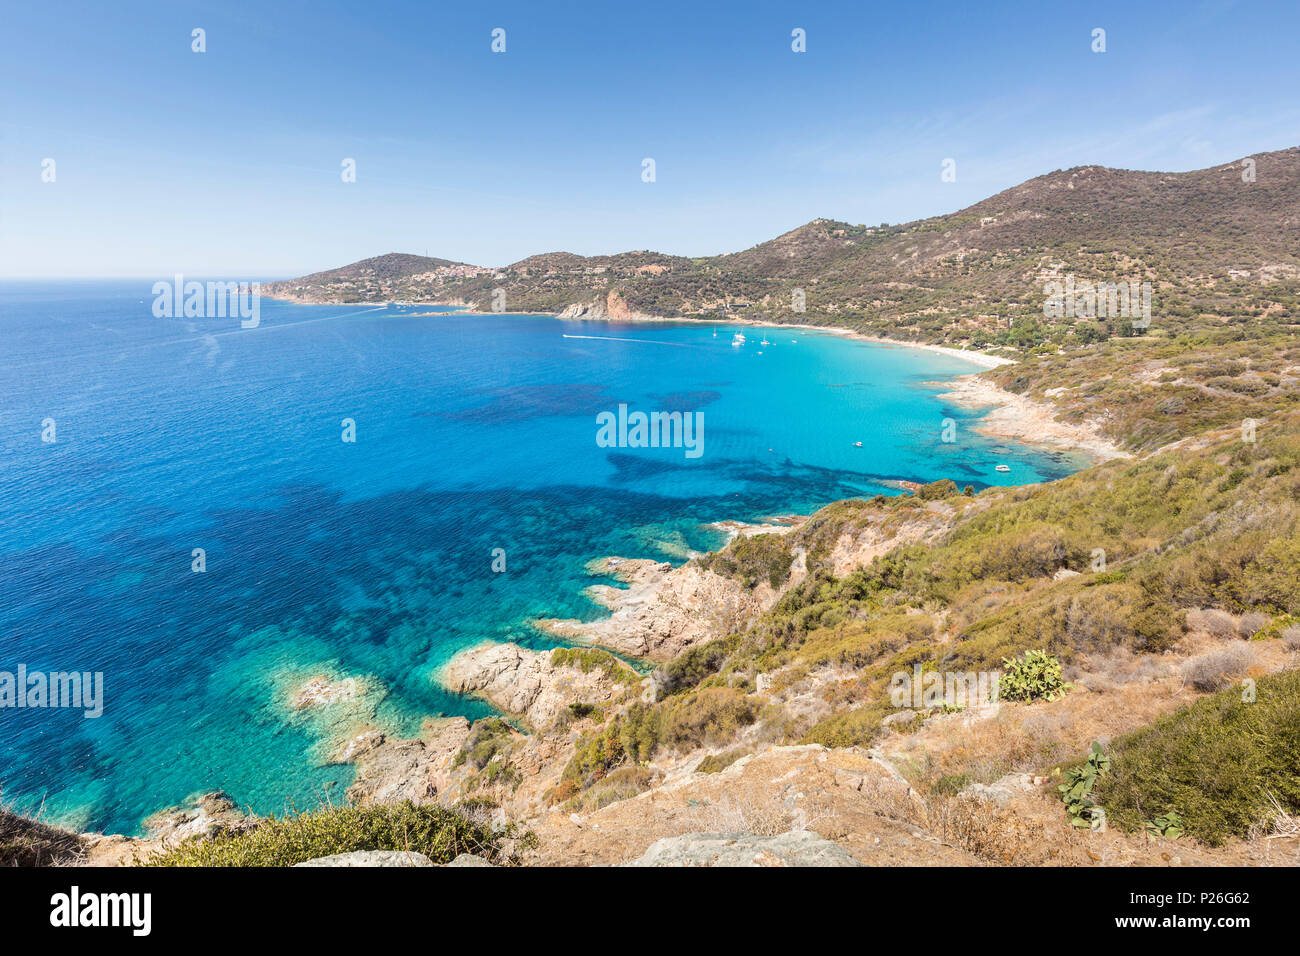 L'eau claire de la plage de Menasina (plage de Menasina), Cargèse, Corse, France Banque D'Images